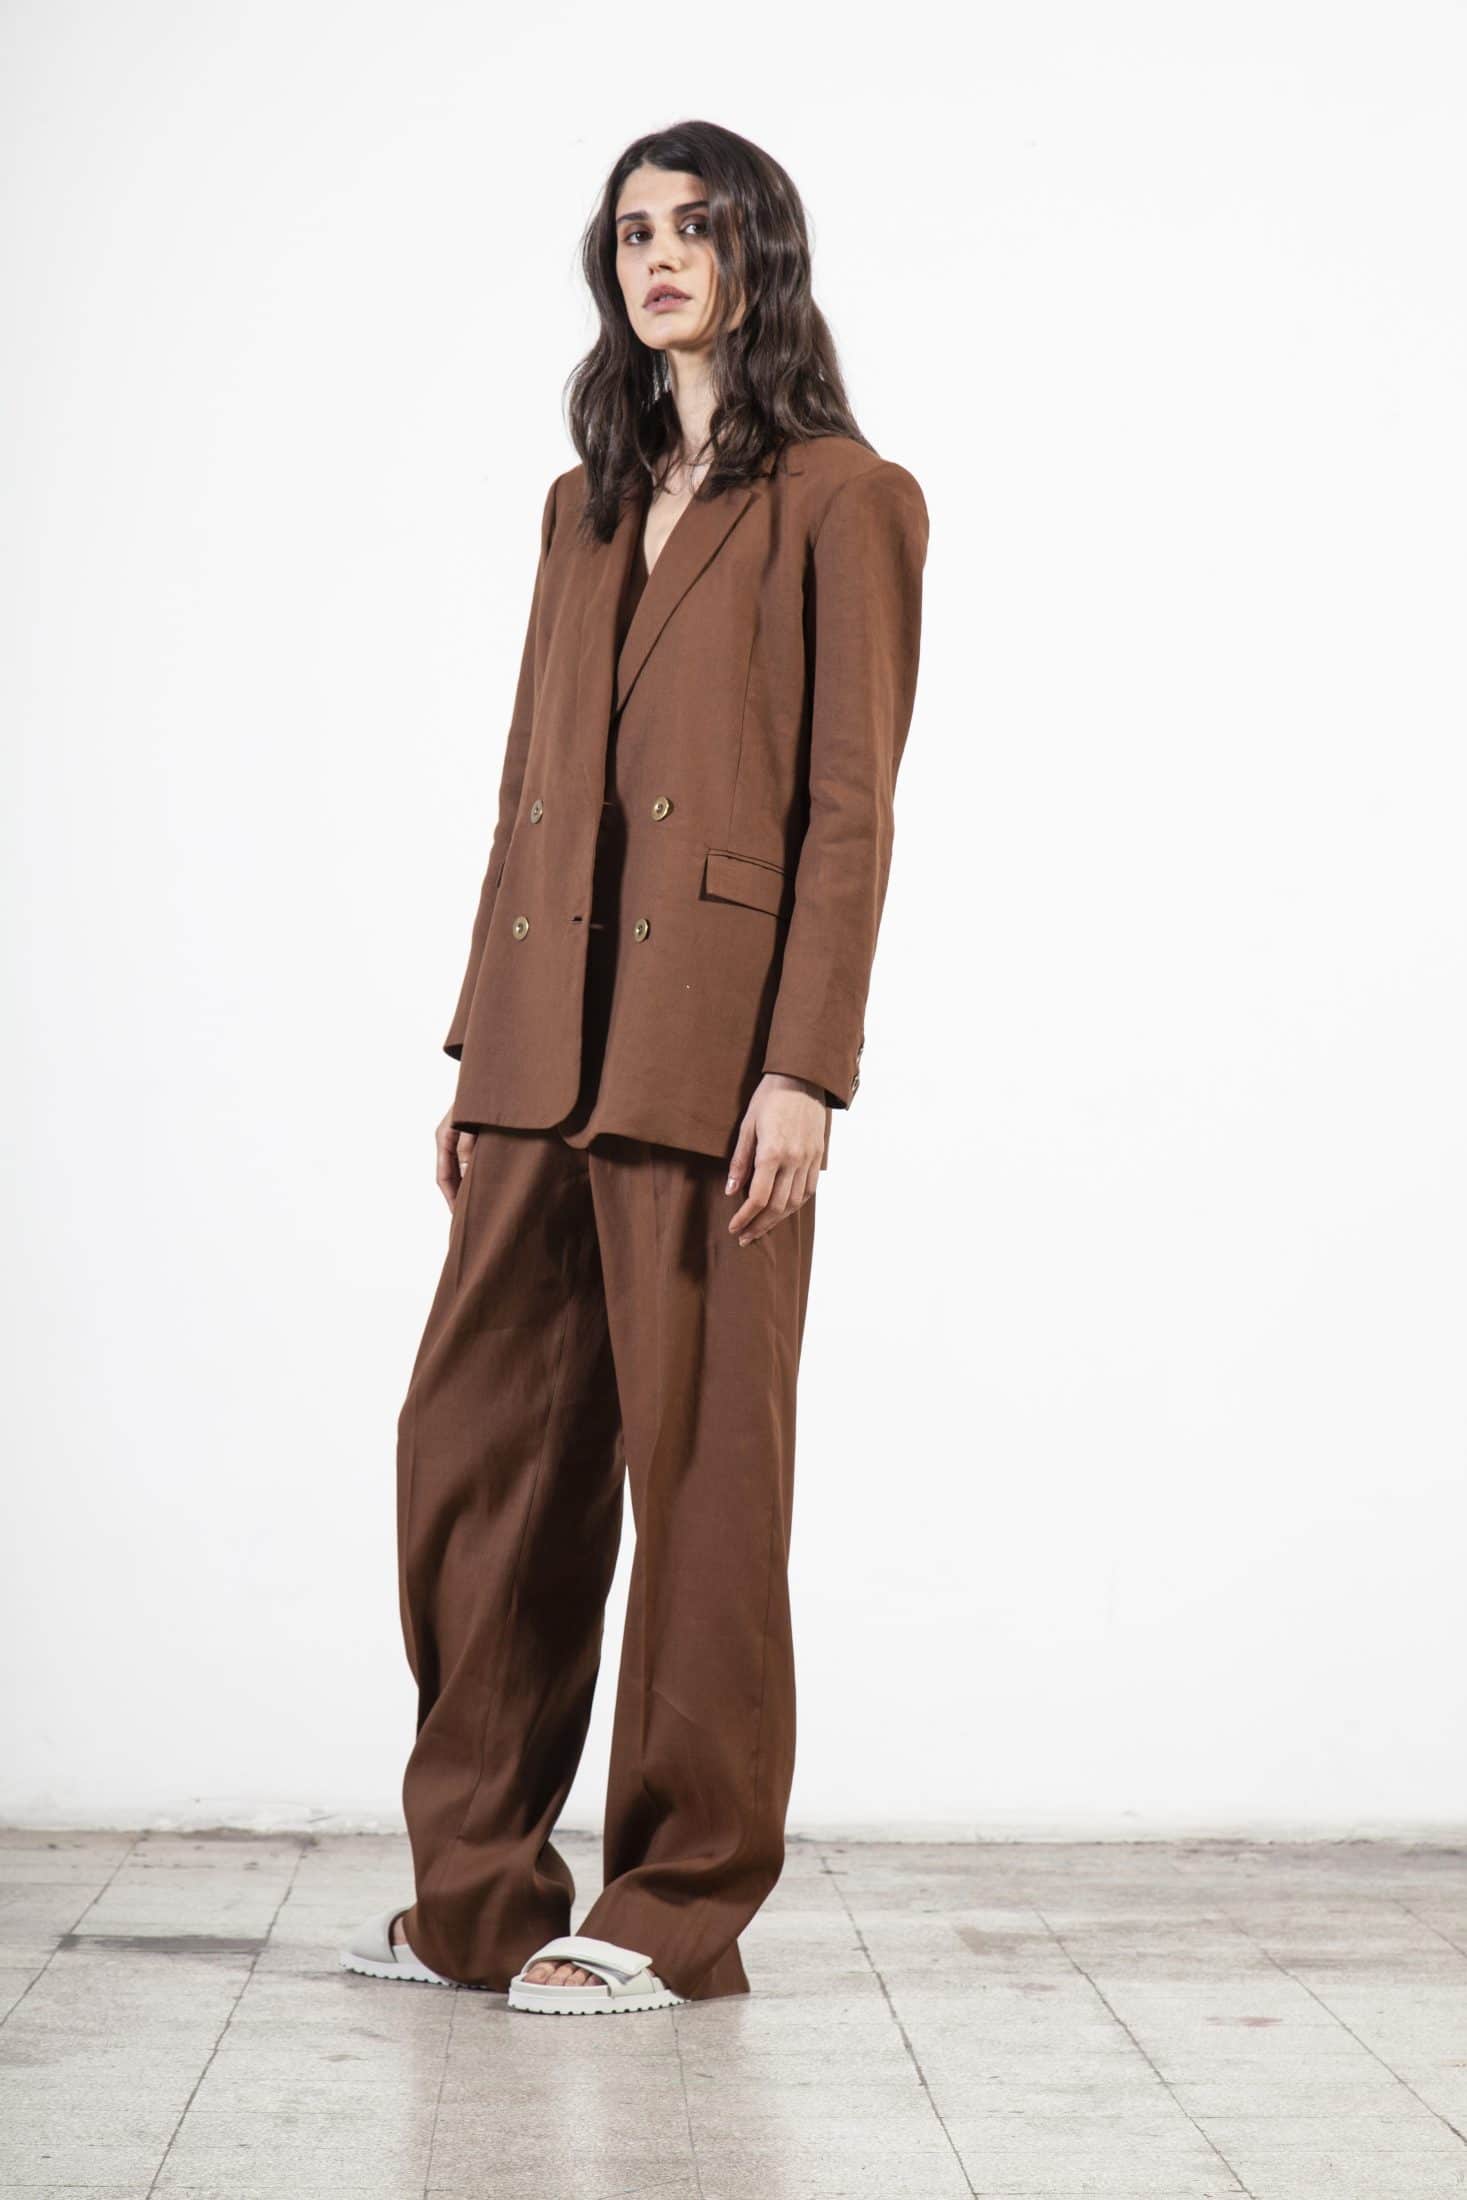 Jacken & Oberbekleidung aus der Souldaze-Kollektion Margot Jacket Brown nachhaltige Mode ethische Mode